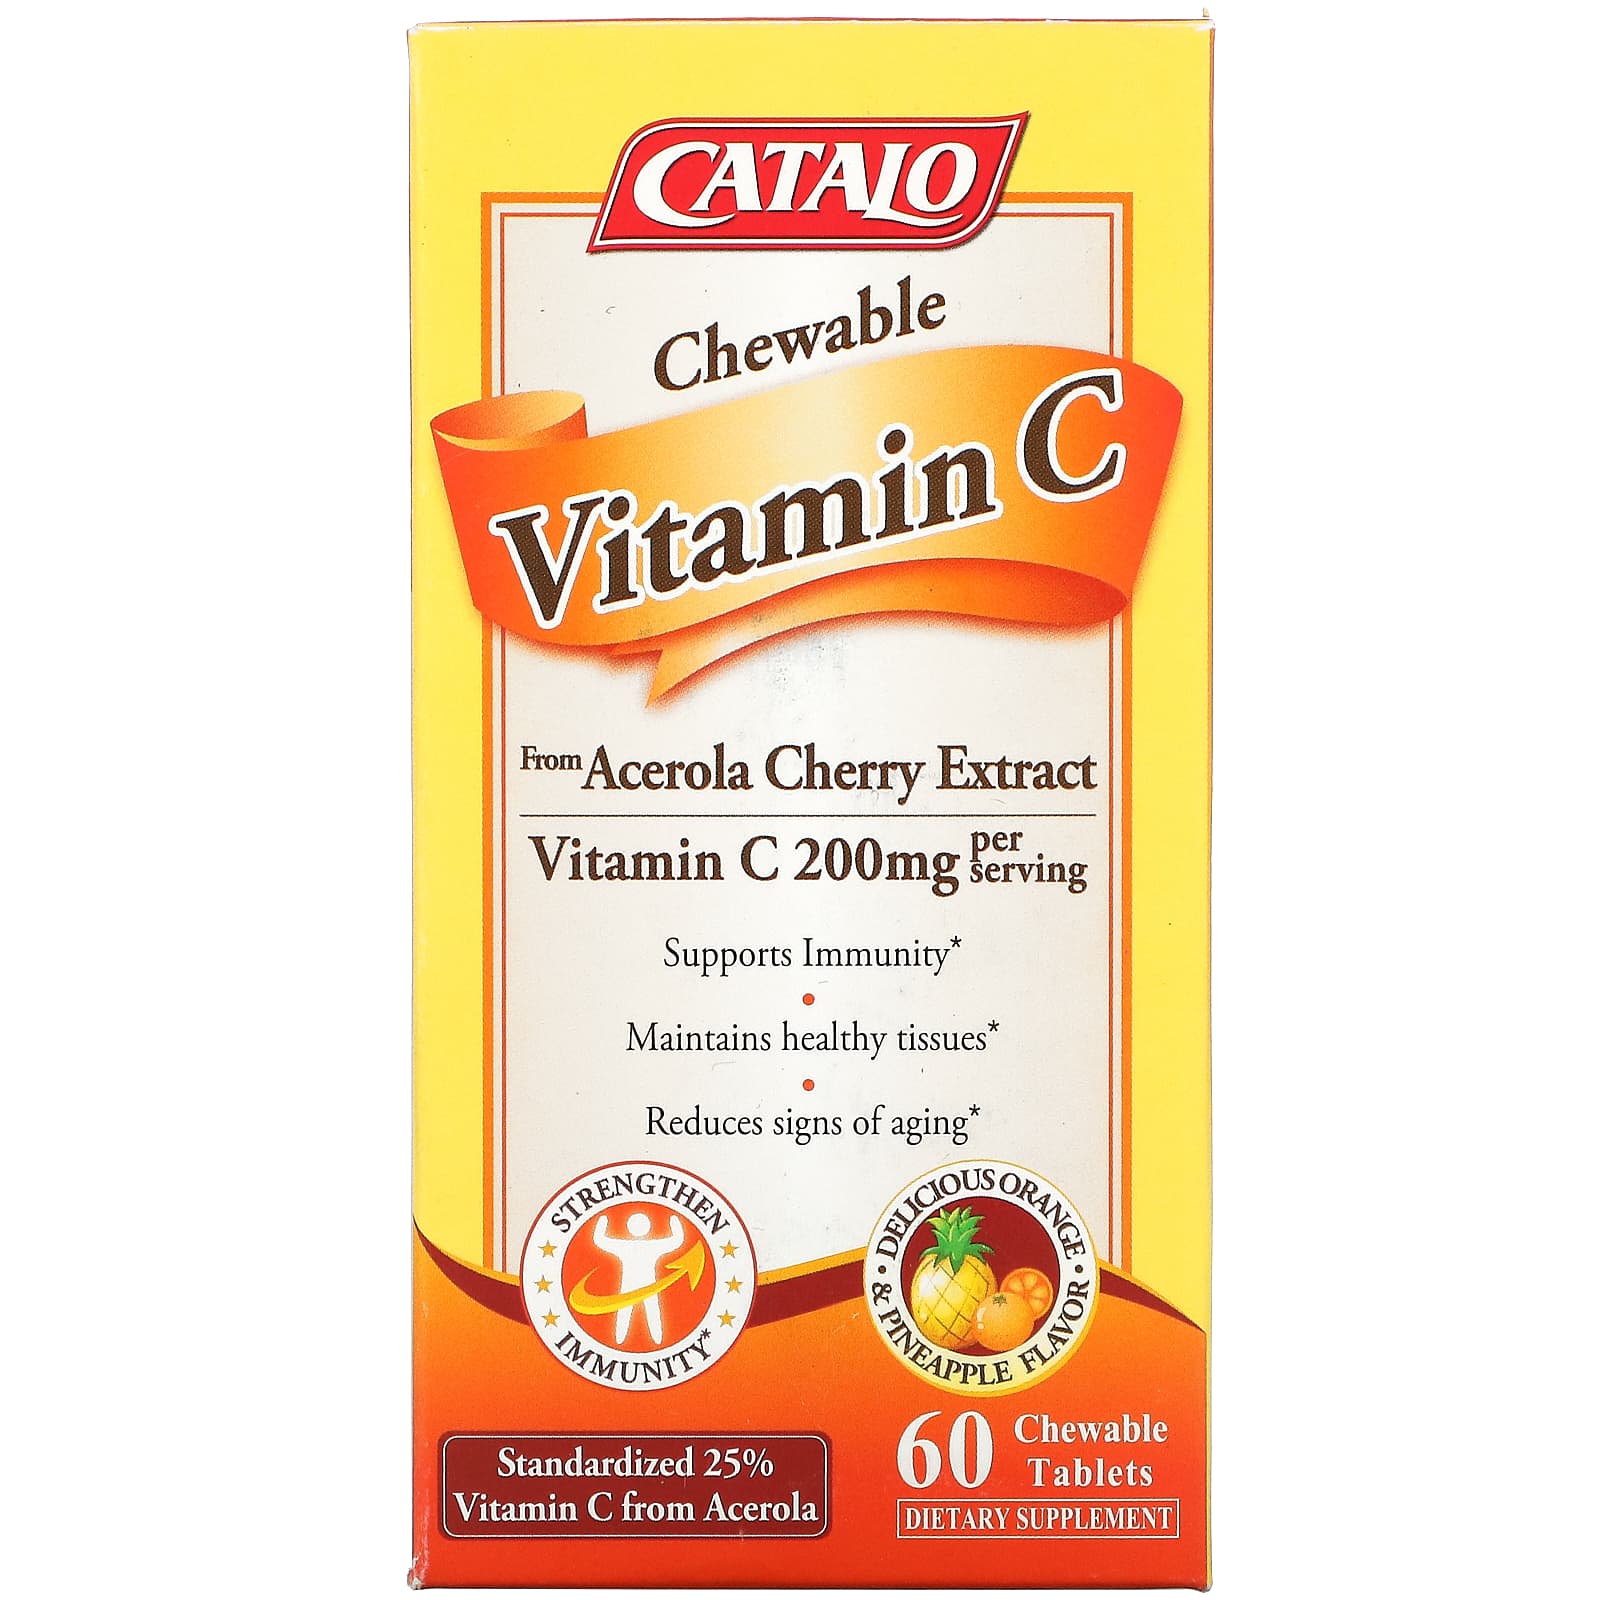 Жевательный Витамин C Catalo Naturals, апельсин и ананас, 60 жевательных таблеток